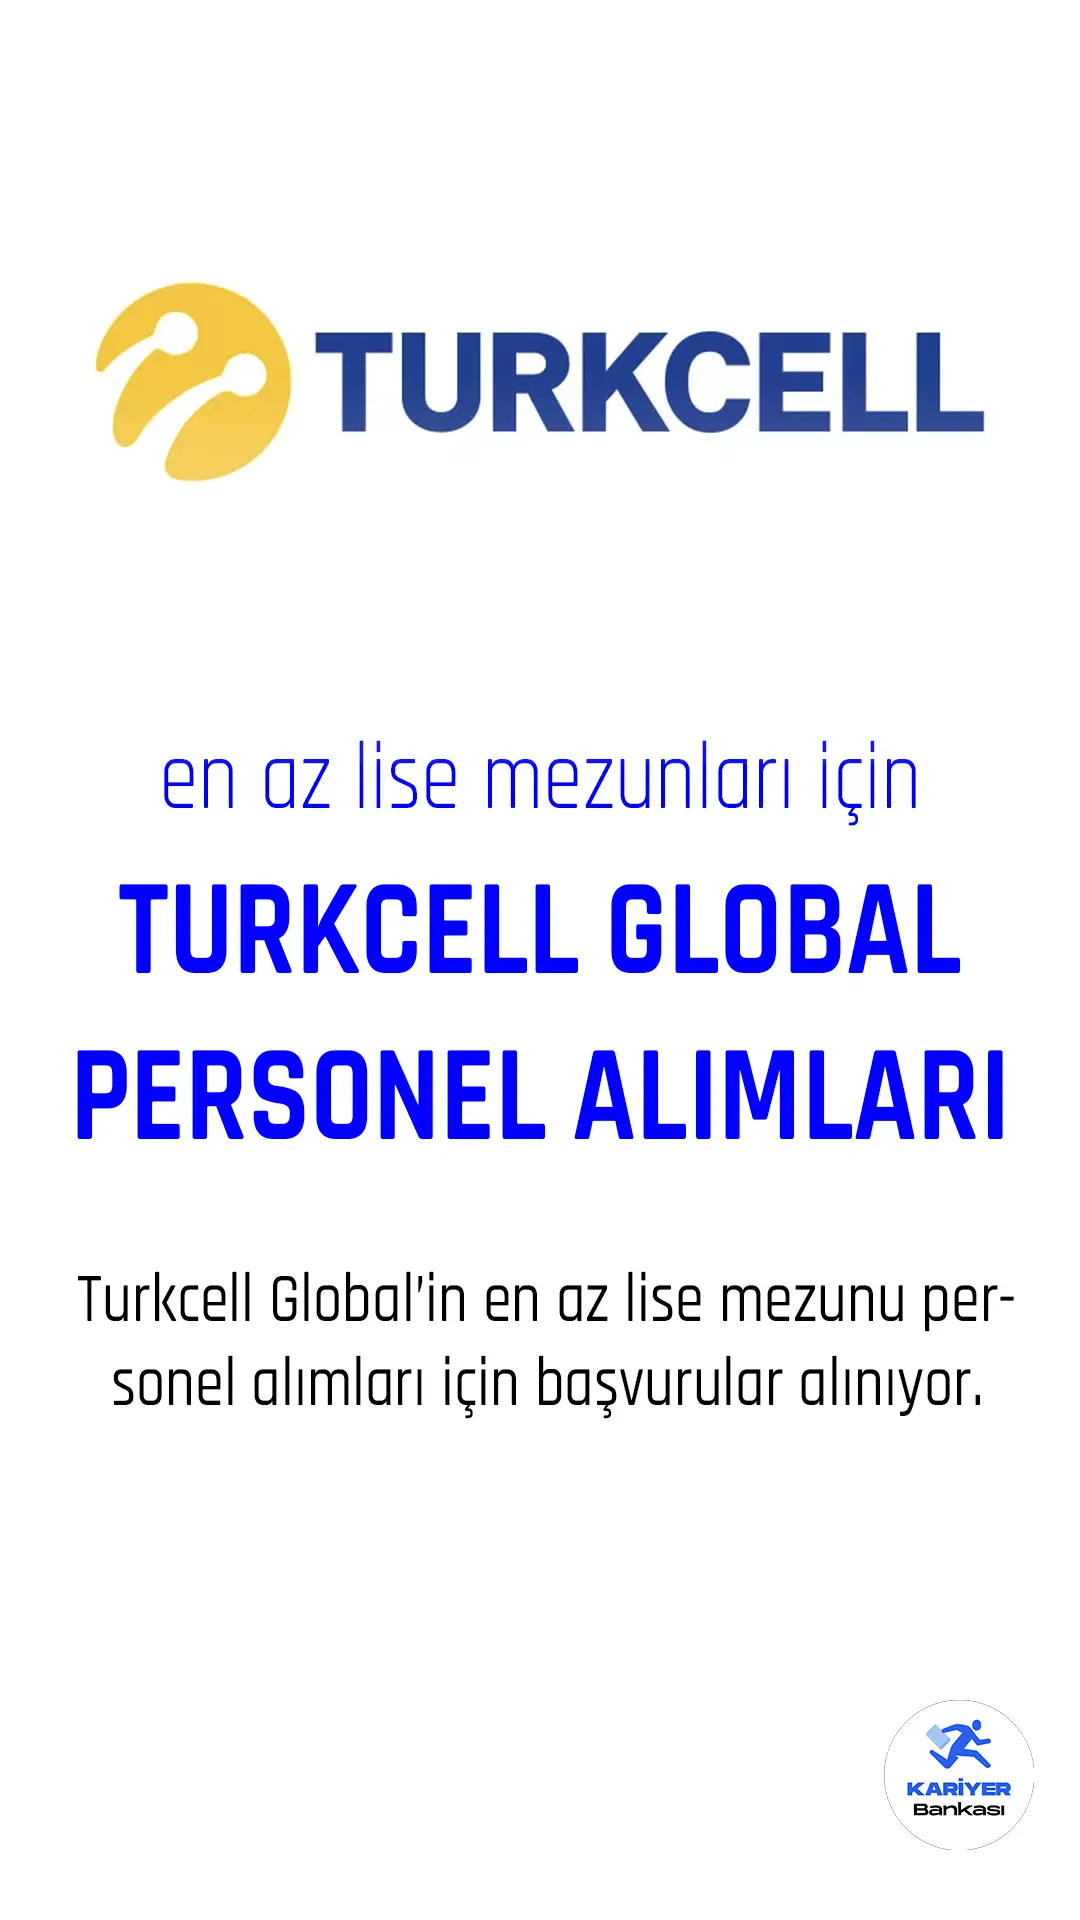 Turkcell global personel alımları başladı.